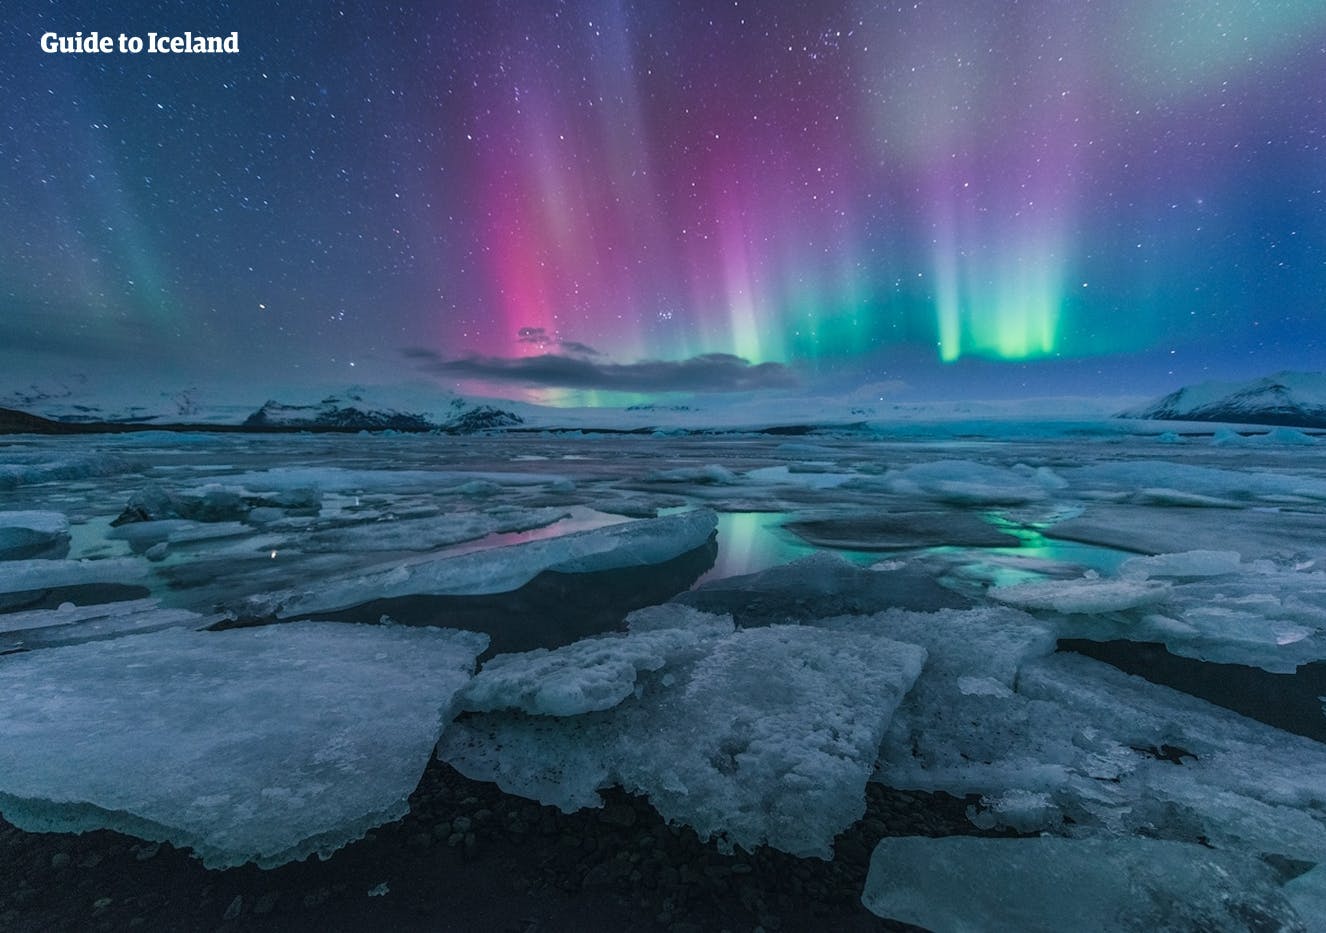 Las hermosas auroras boreales bailando en el cielo sobre la laguna glaciar Jökulsárlón